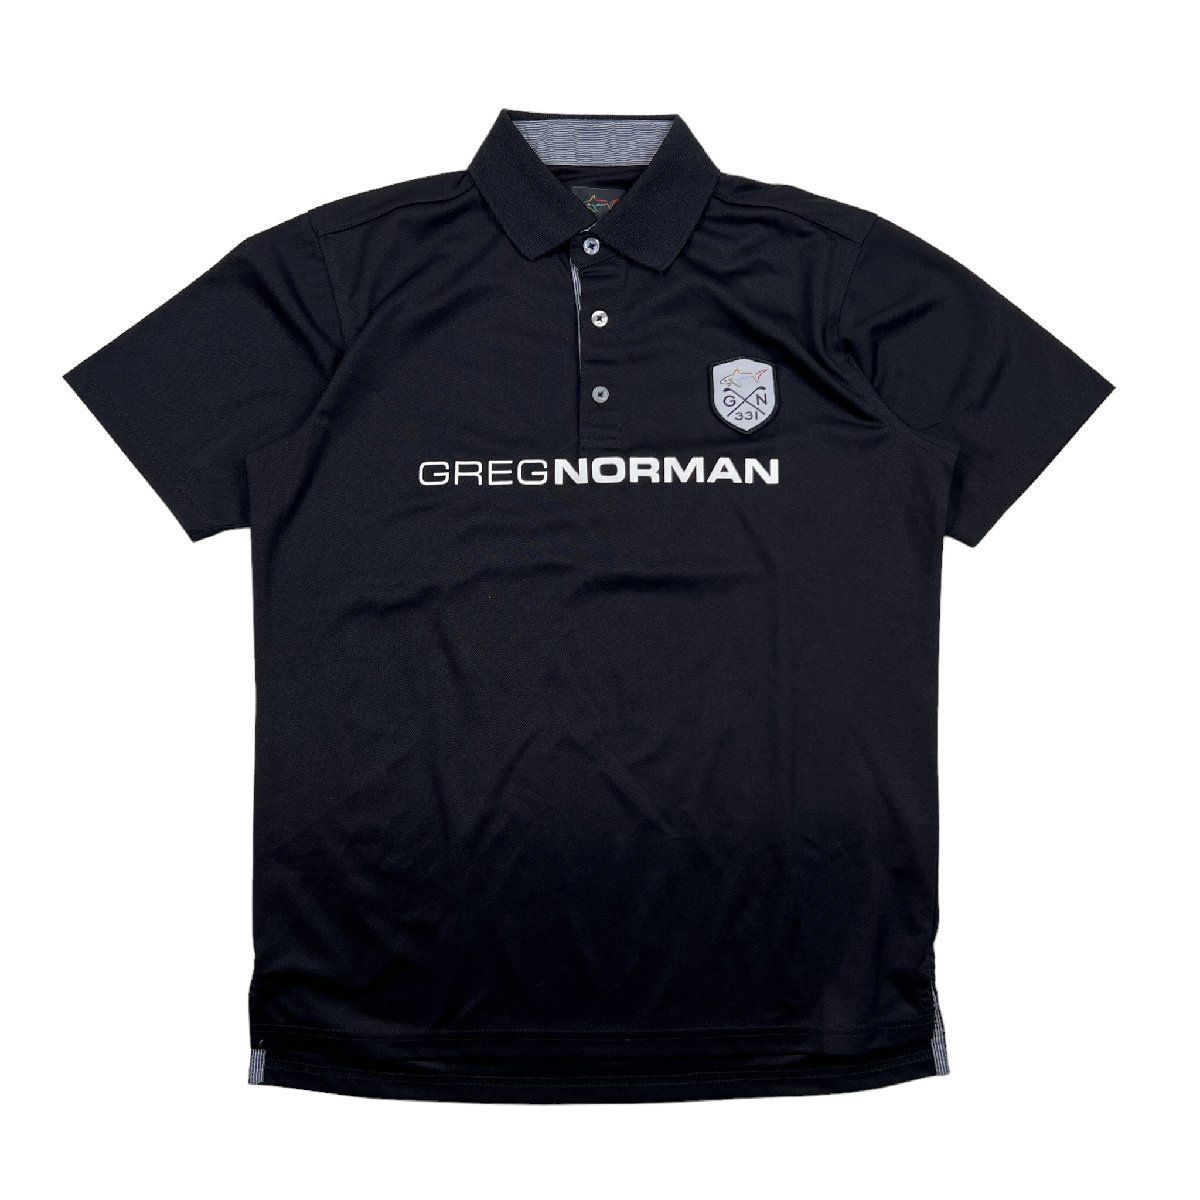 GREG NORMAN グレッグノーマン 半袖ポロシャツ トップス 無地 ブラック サイズM メンズ ヴィンテージ スポーツウェア 併